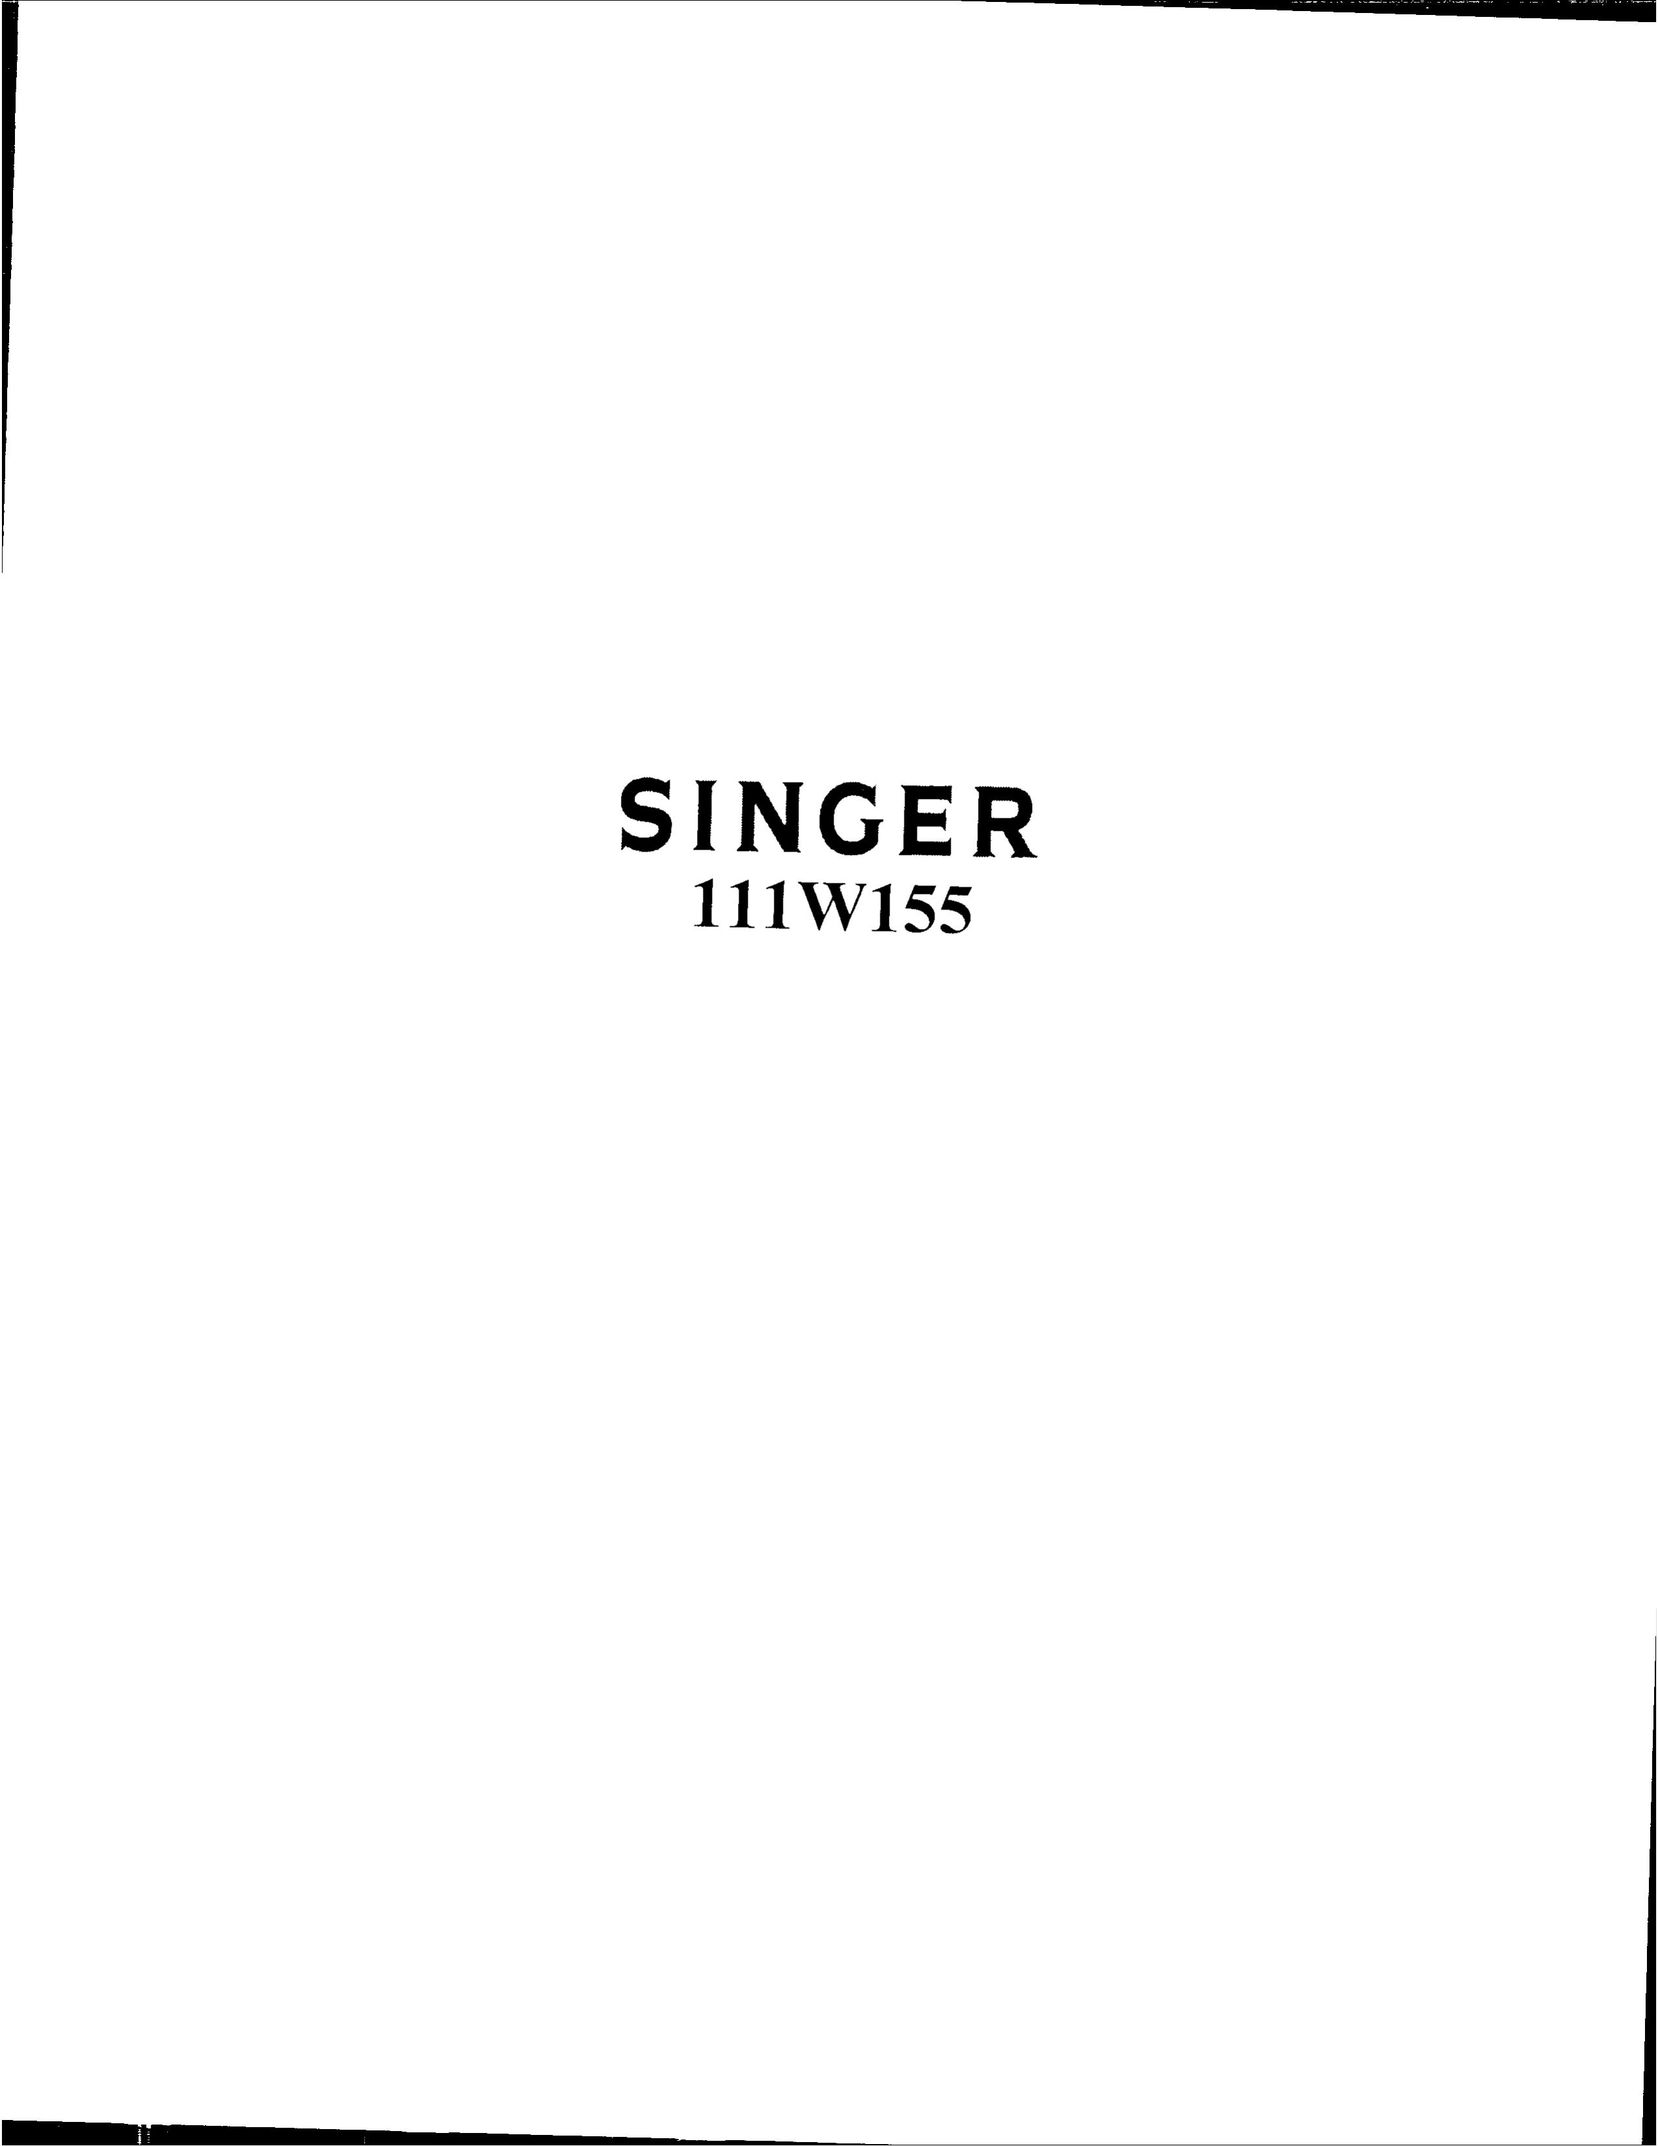 Singer 111W155 Sewing Machine User Manual